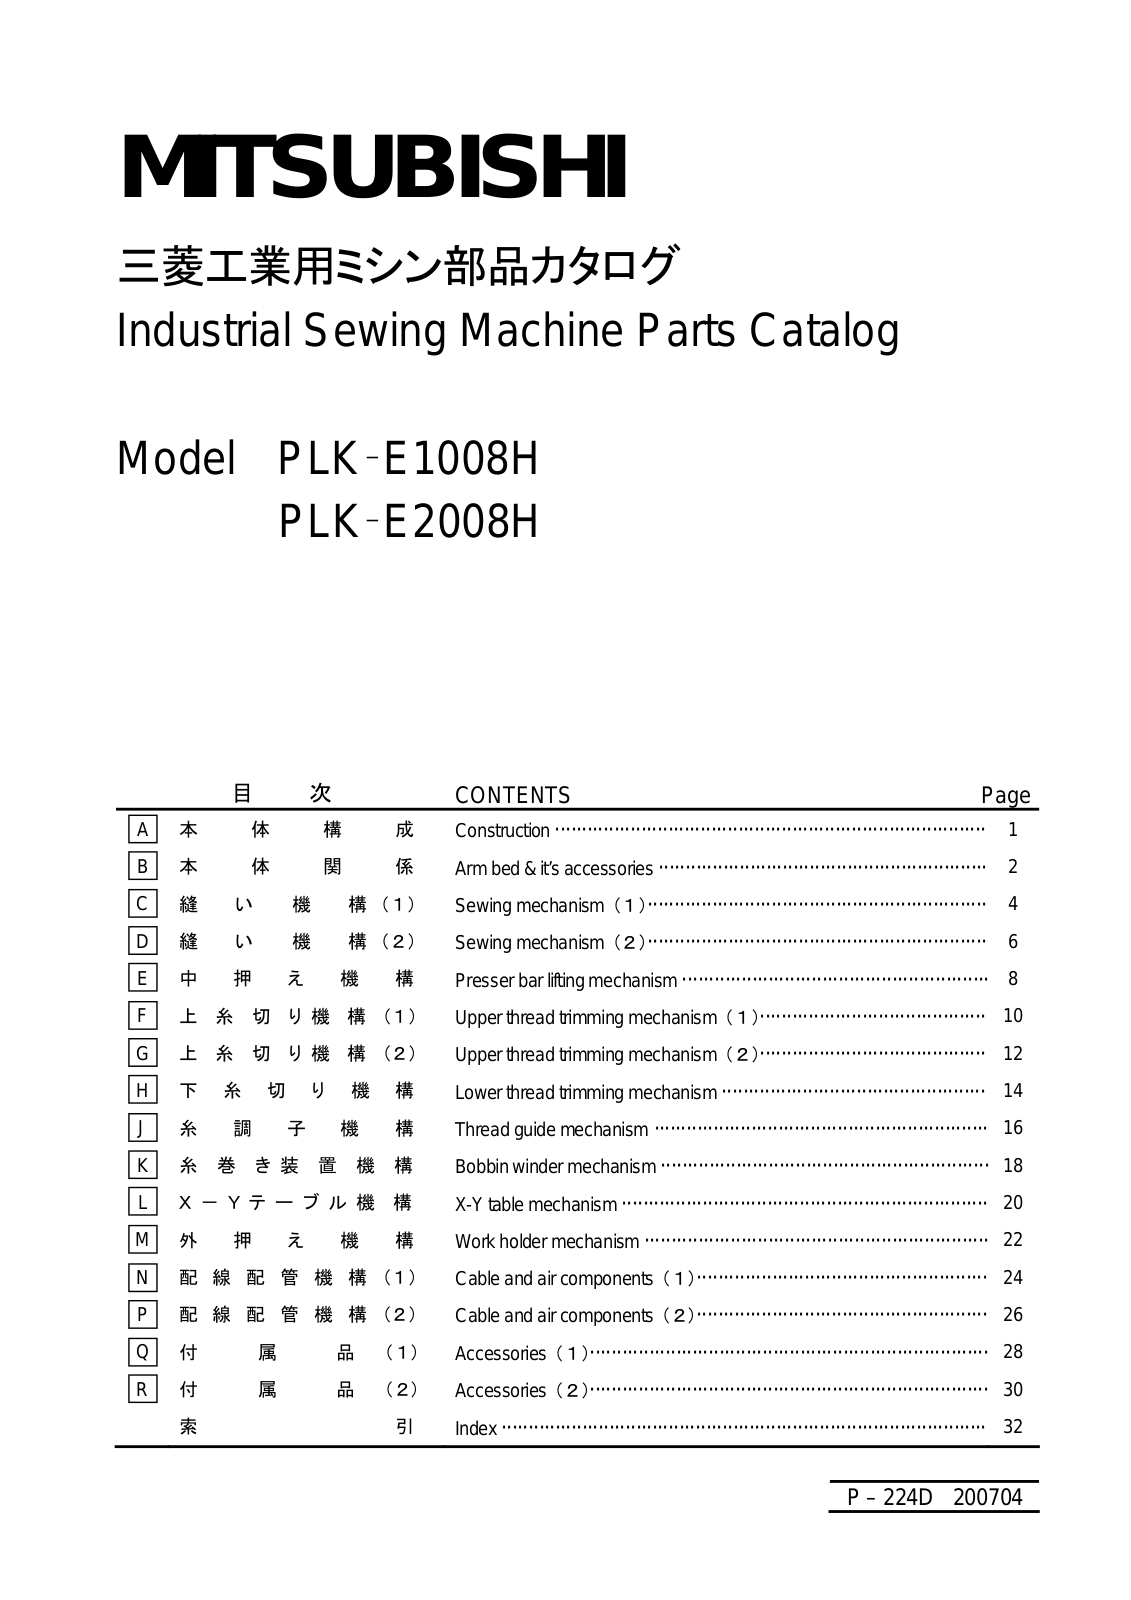 MITSUBISHI PLK-E1008H, PLK-E2008H Parts List